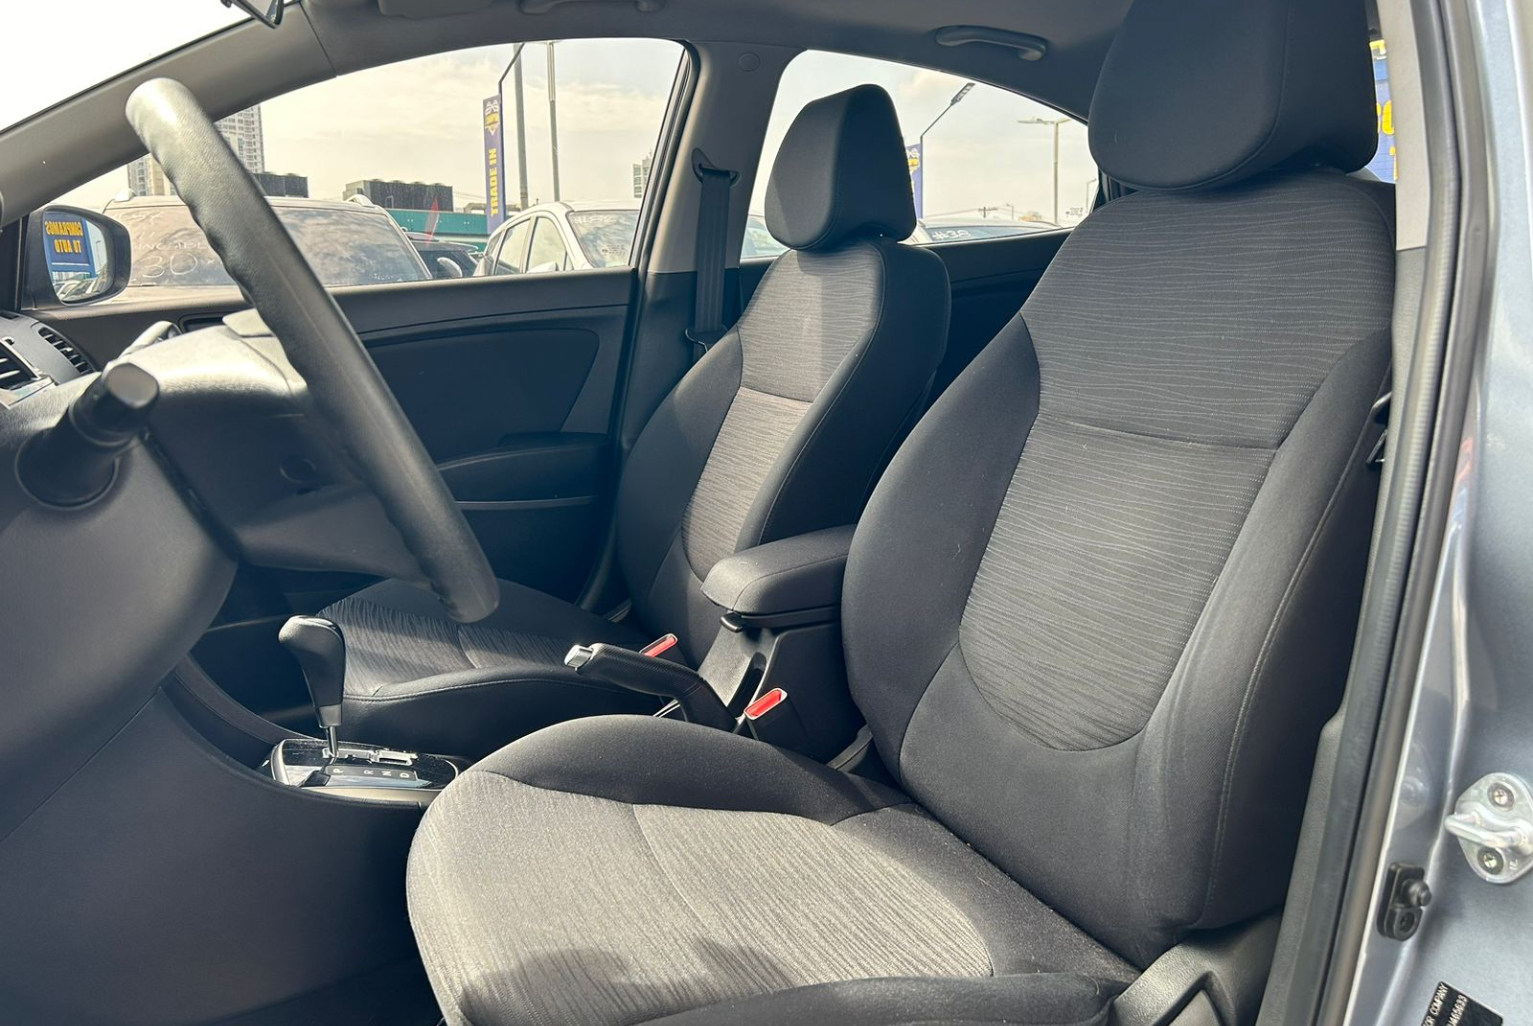 Hyundai Accent 2019 Automático color Plateado, Imagen #8